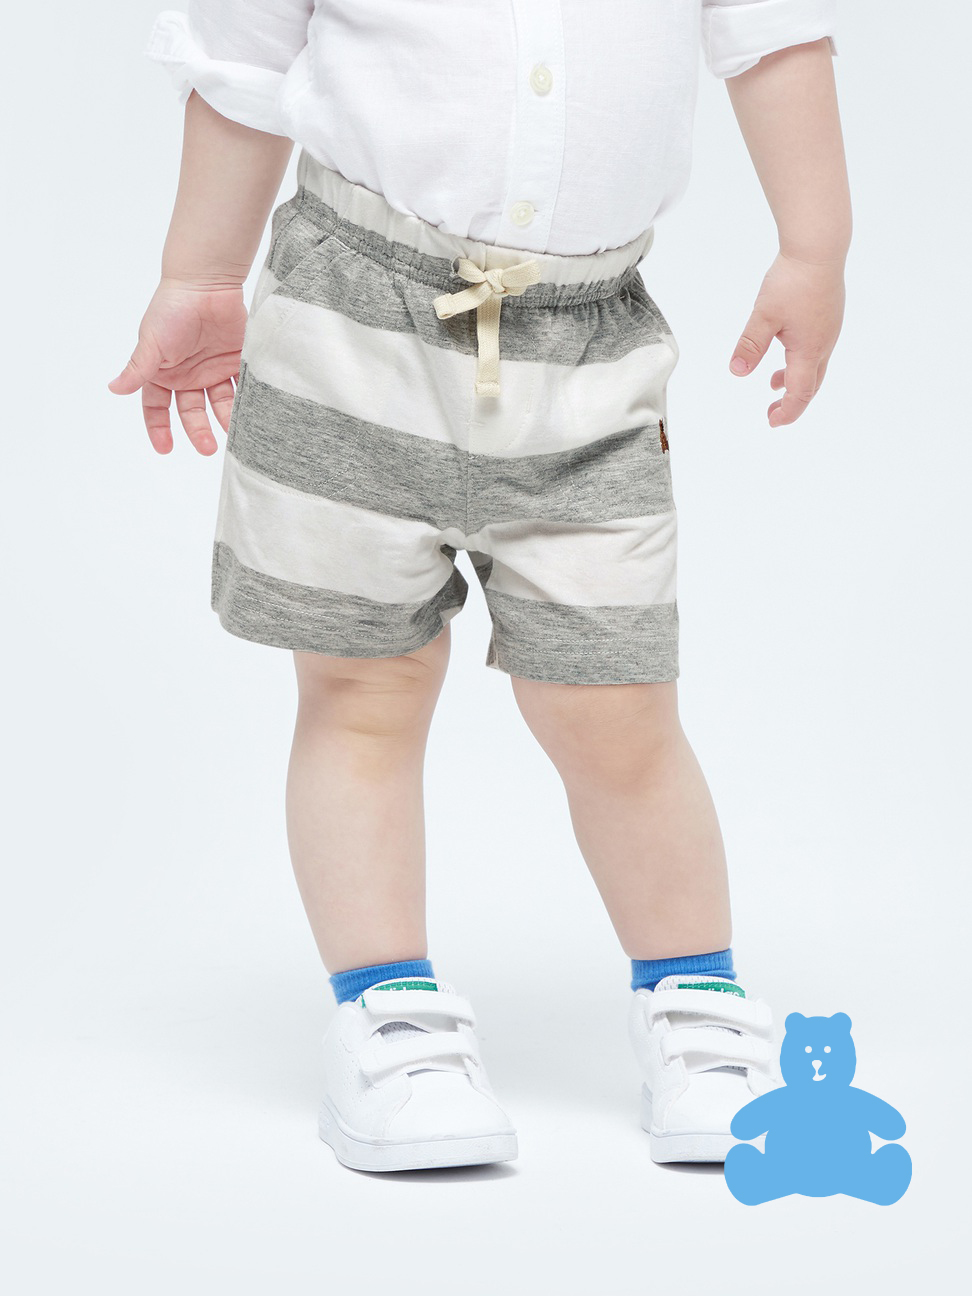 嬰兒|清爽條紋透氣短褲 布萊納系列-灰色條紋